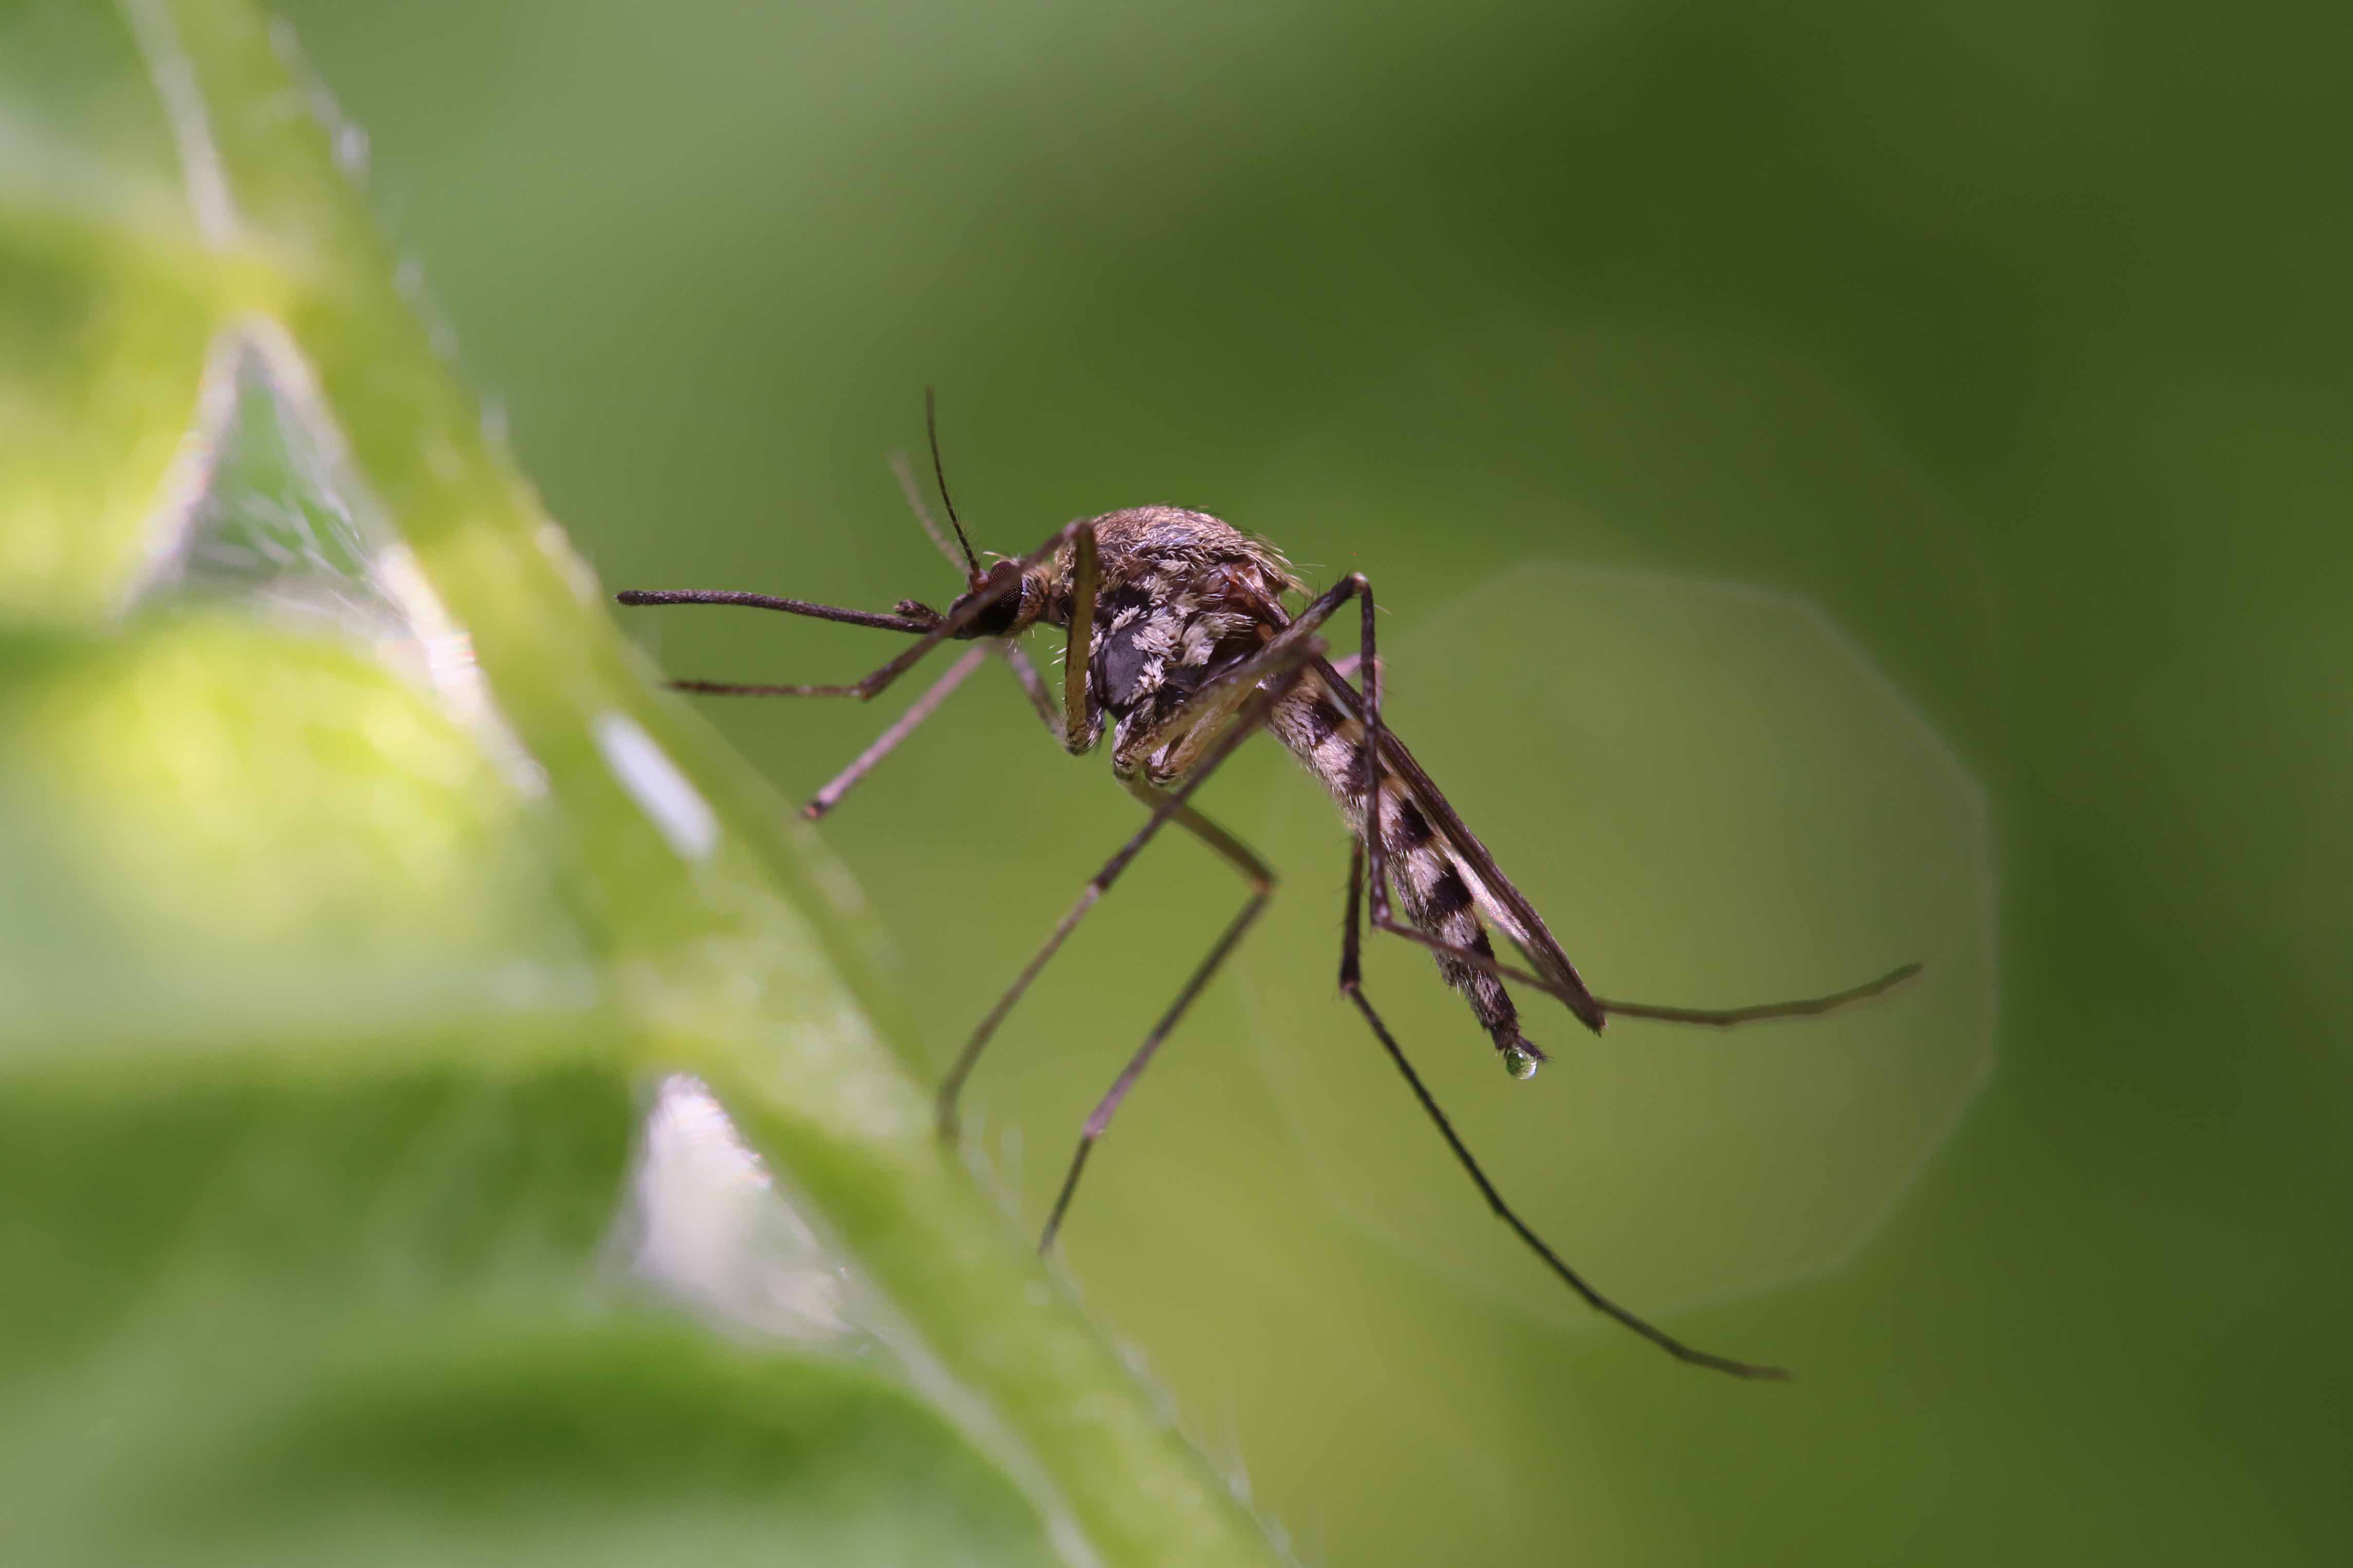 Certains moustiques peuvent transmettre des maladies graves aux humains. © achkin, Adobe Stock